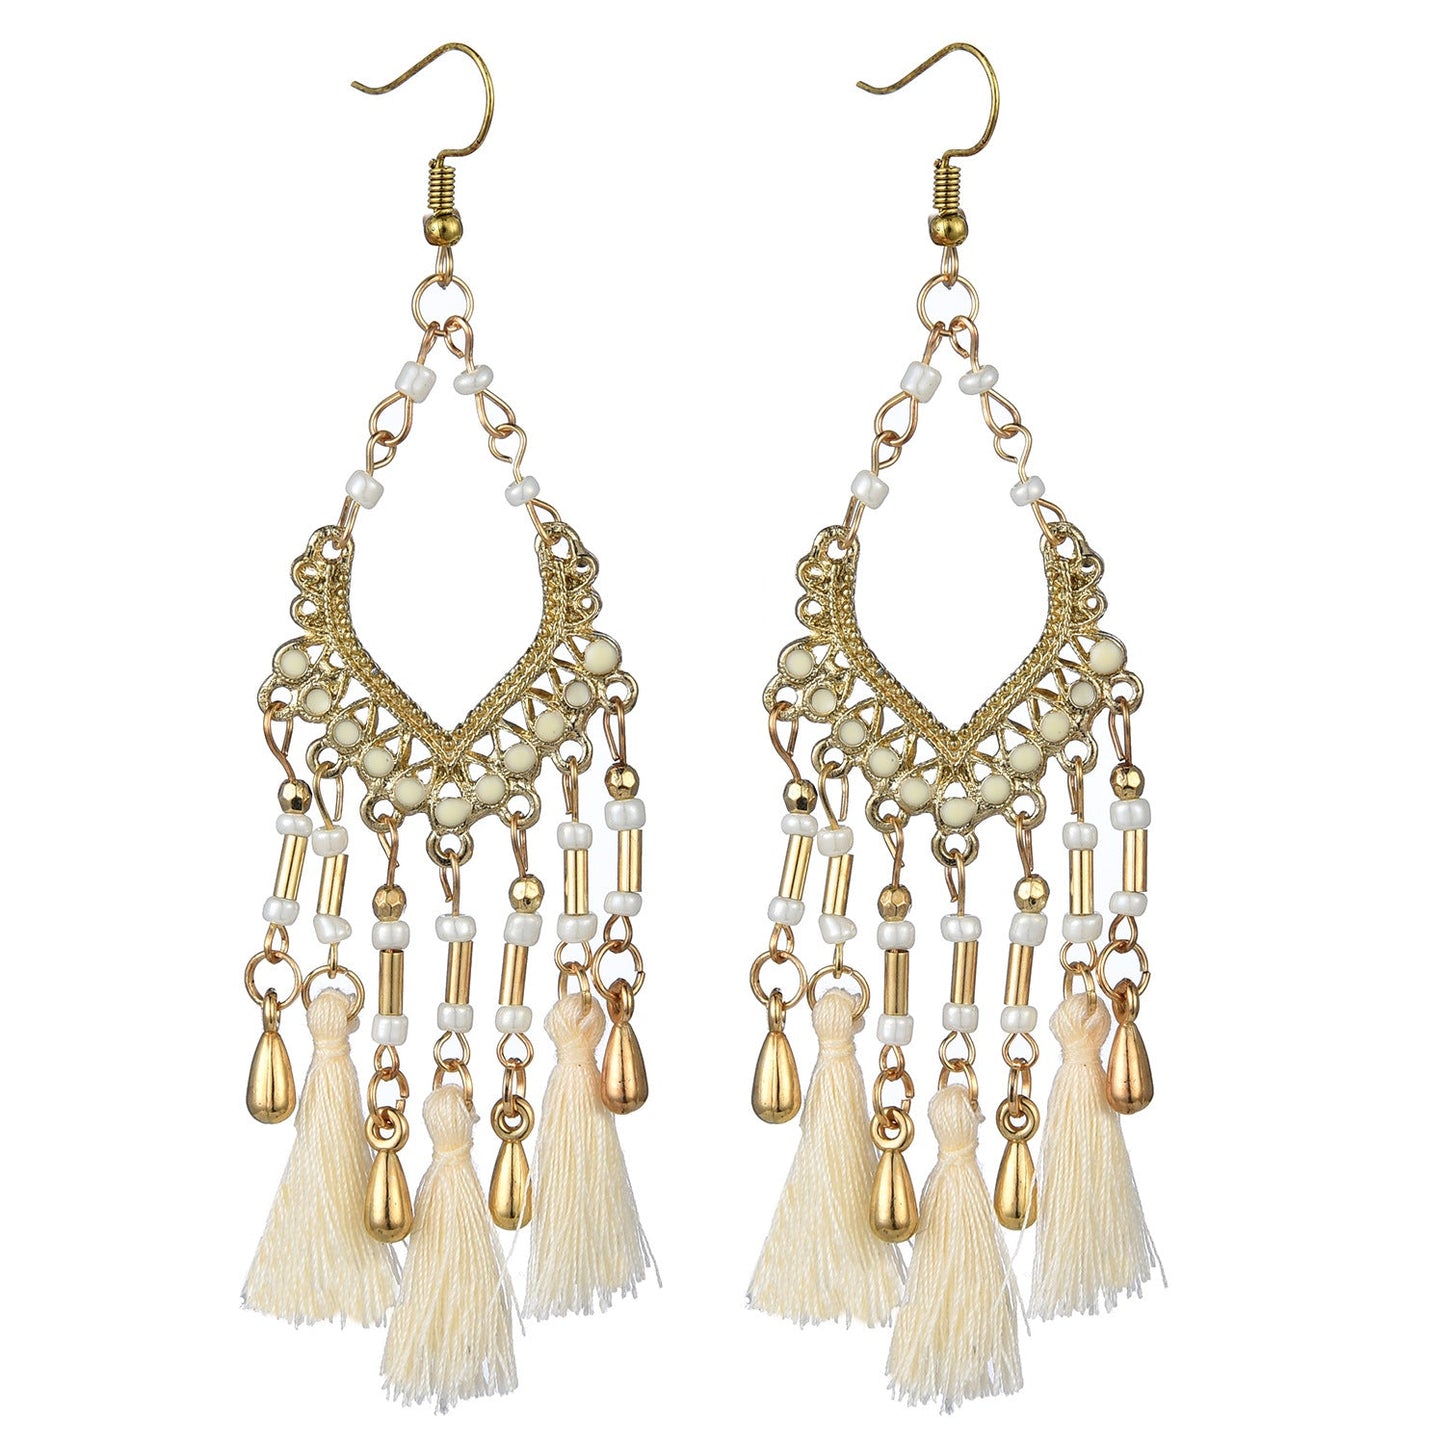 Bohemian hollow dripping oil rice beads fan-shaped tassel long earrings